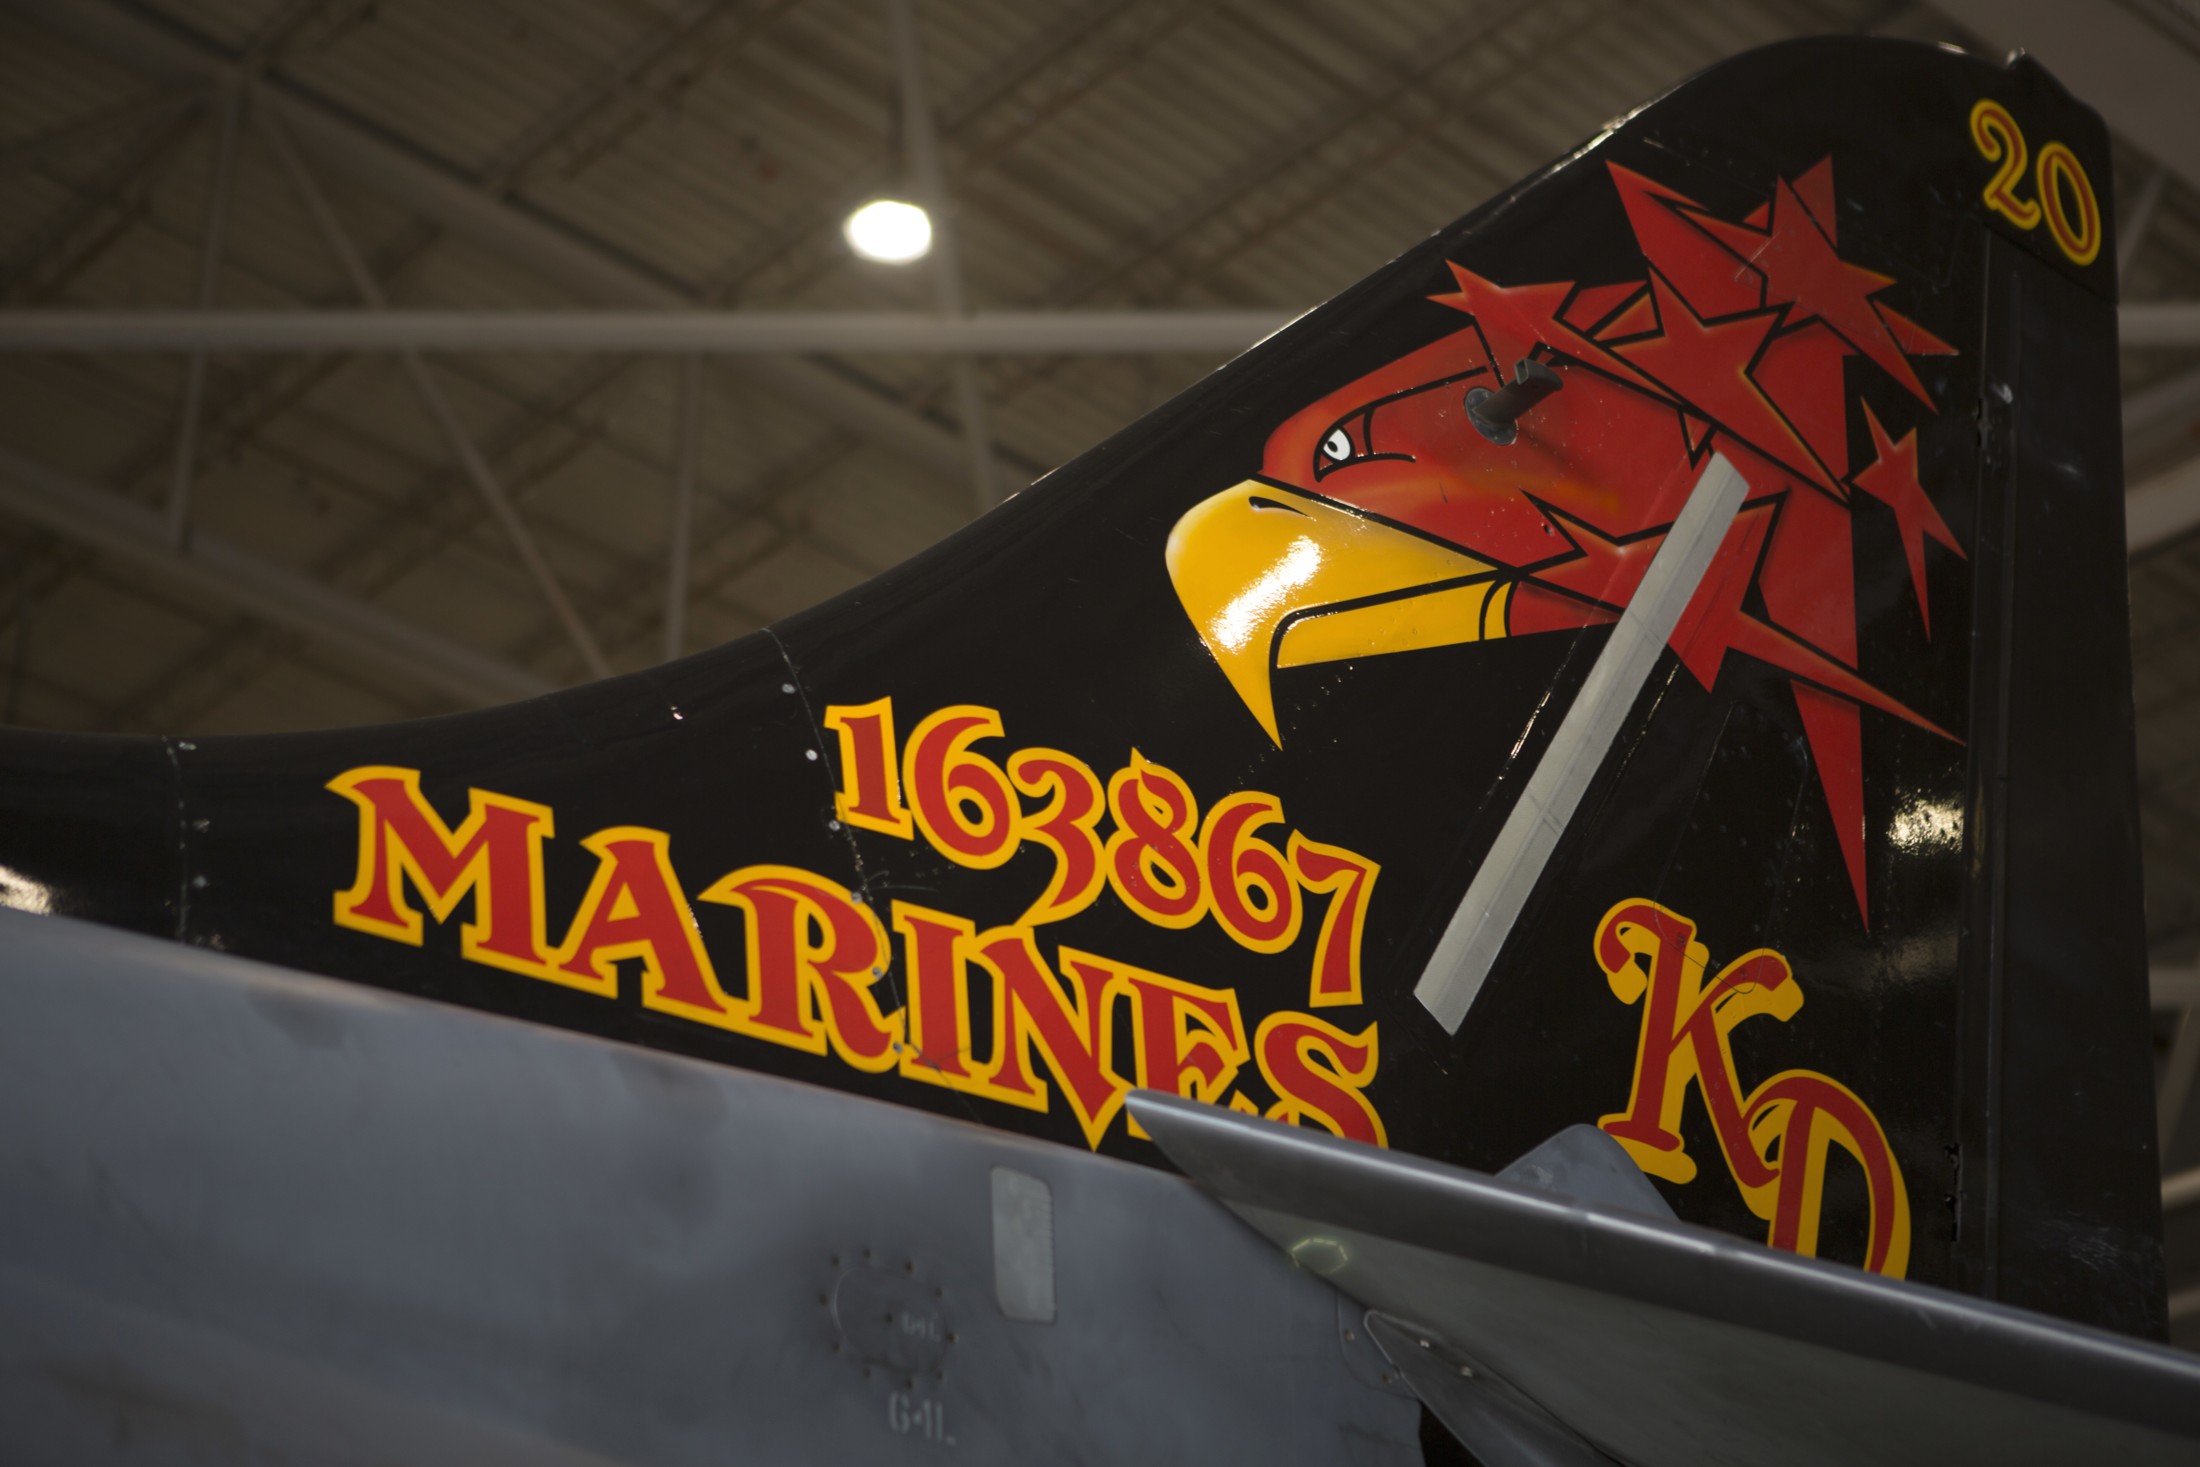 vmat-203 hawks marine attack training squadron av-8b harrier ii mcas cherry point north carolina 11